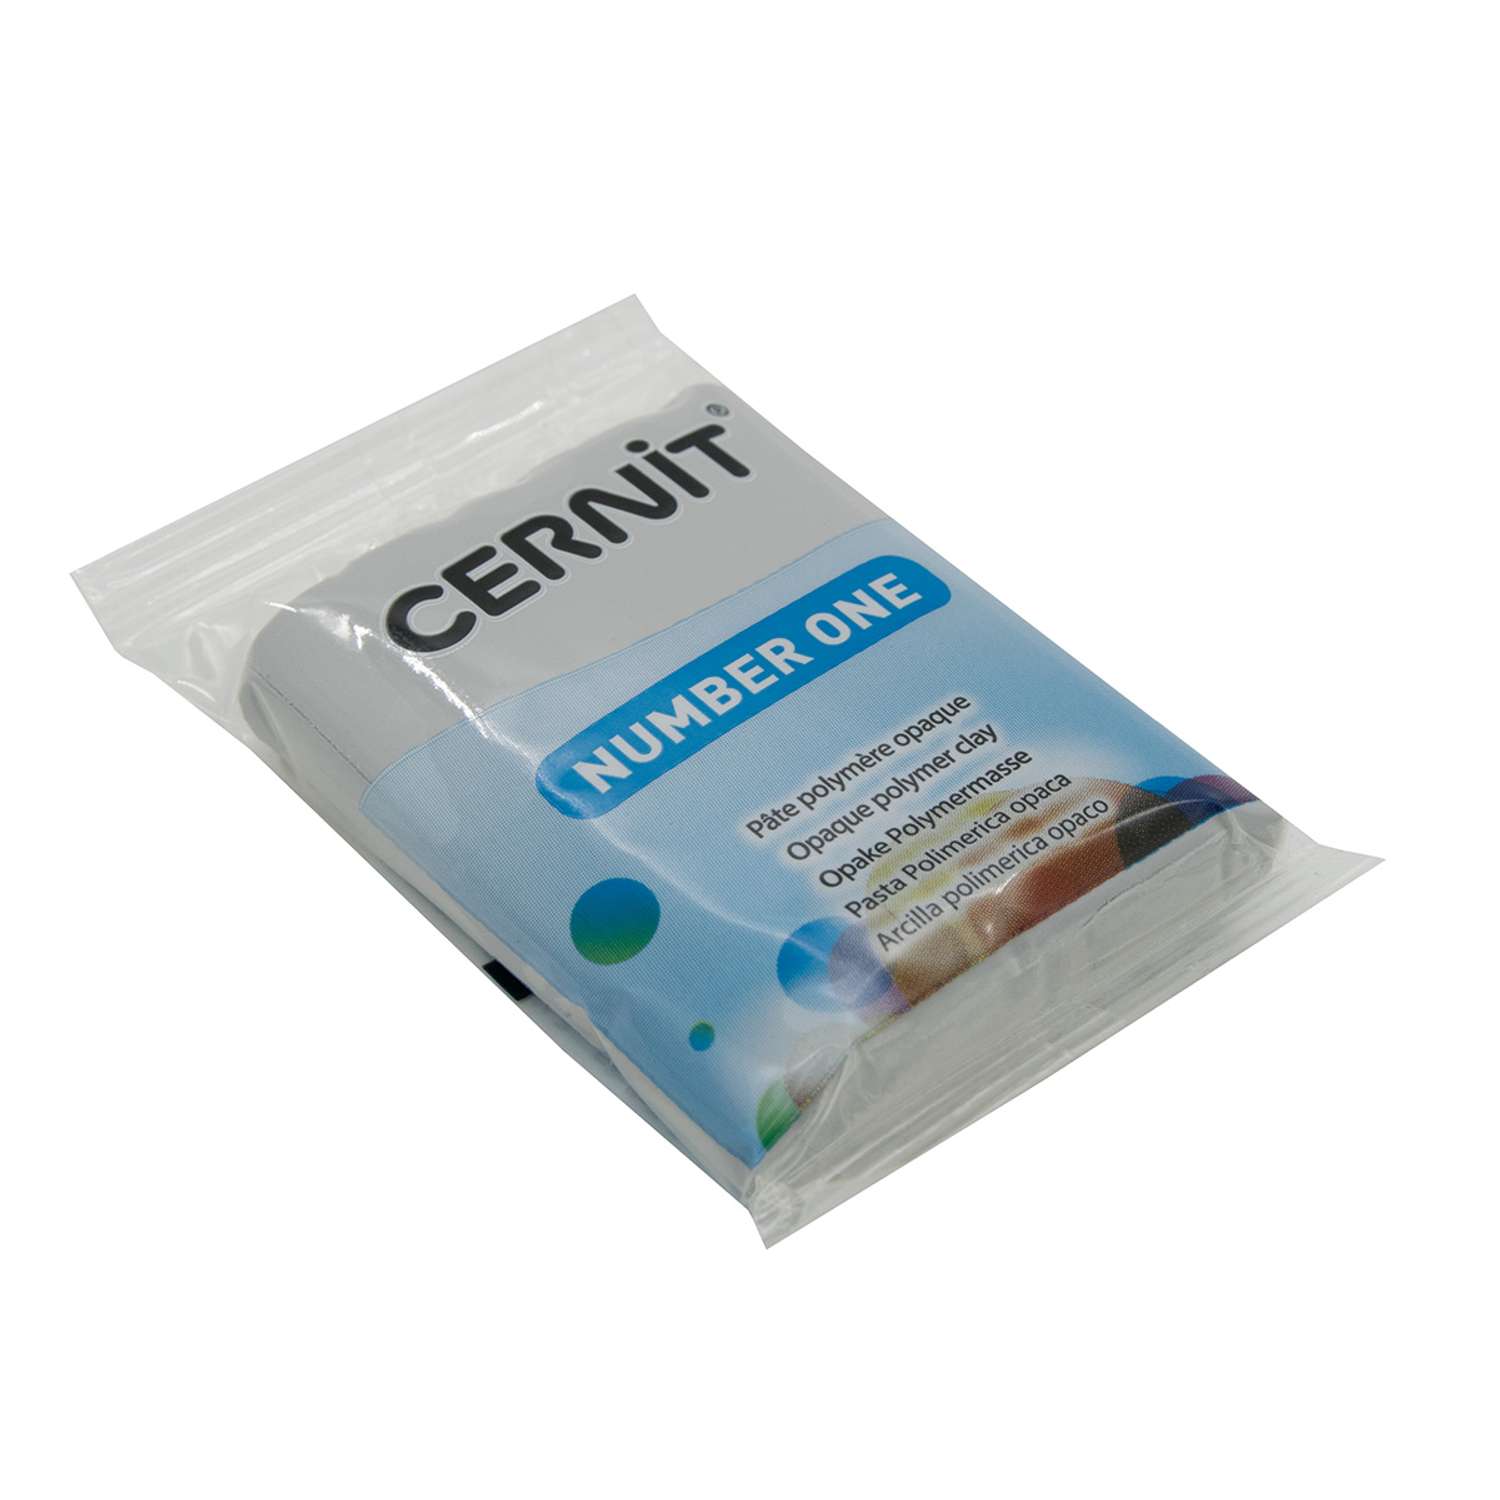 Полимерная глина Cernit пластика запекаемая Цернит № 1 56-62 гр CE0900056 - фото 8